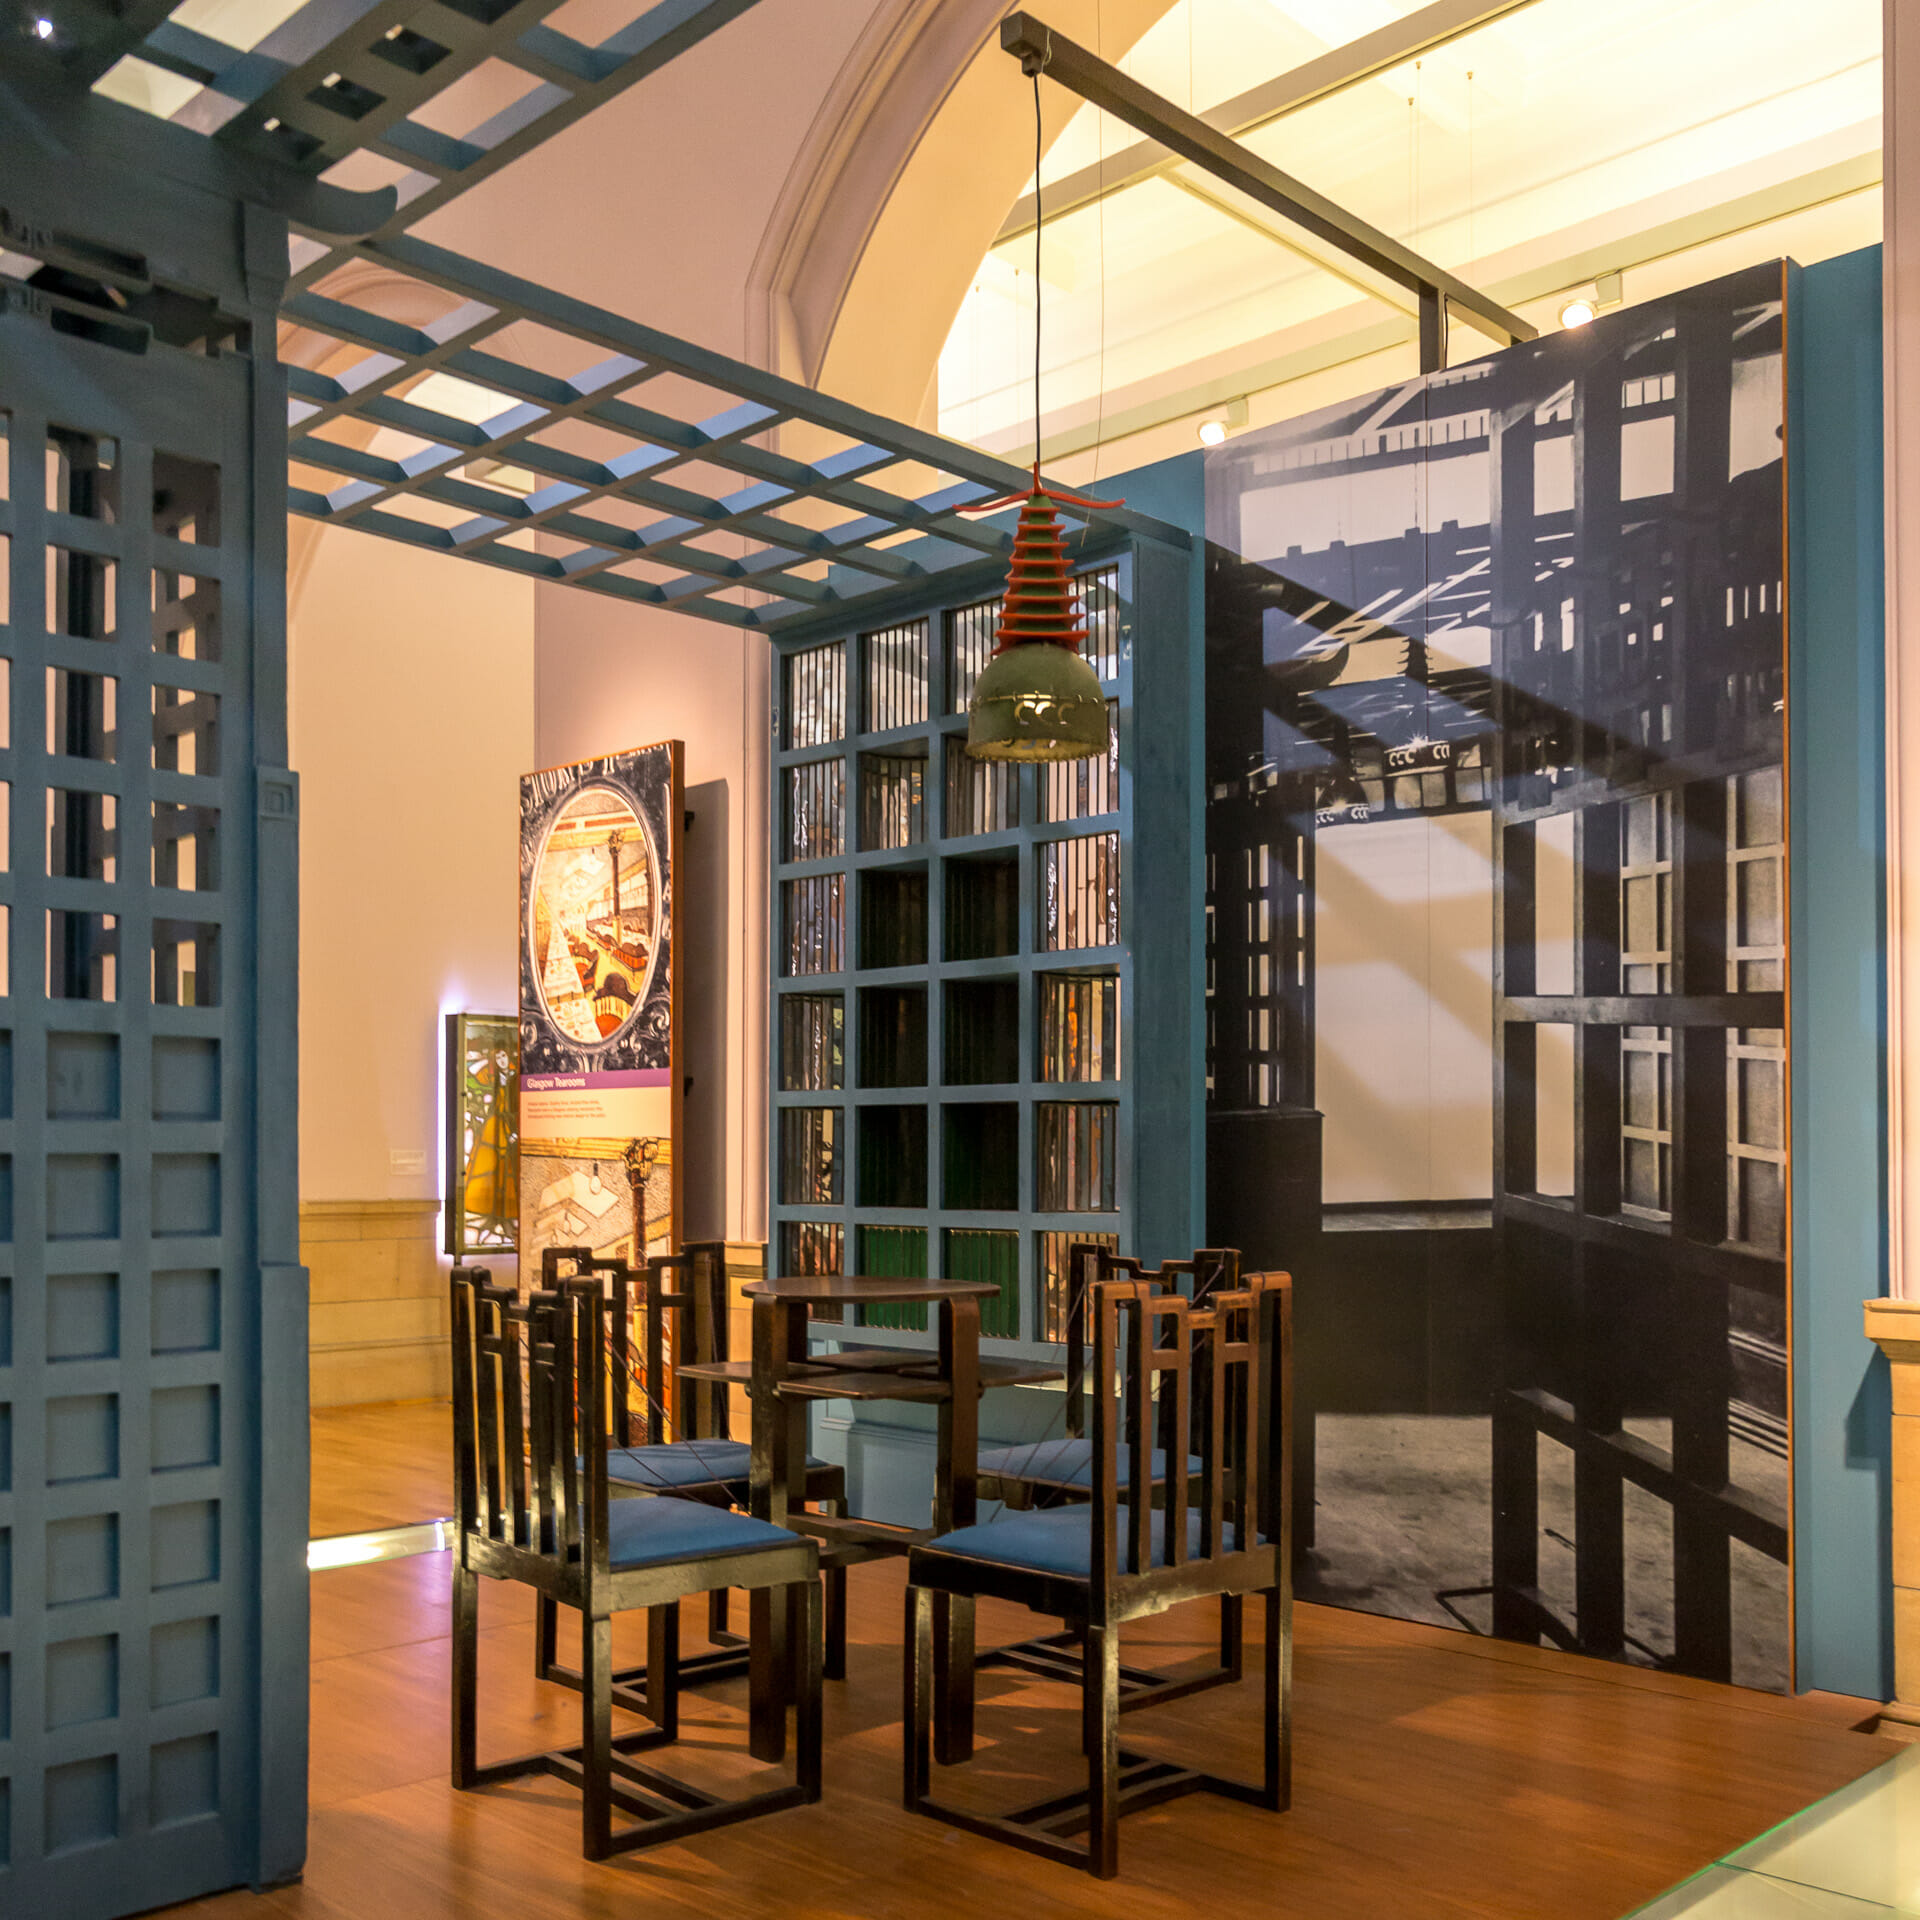 Die Inneneinrichtung des Ingram Tea Rooms von Charles Rennie Mackintosh